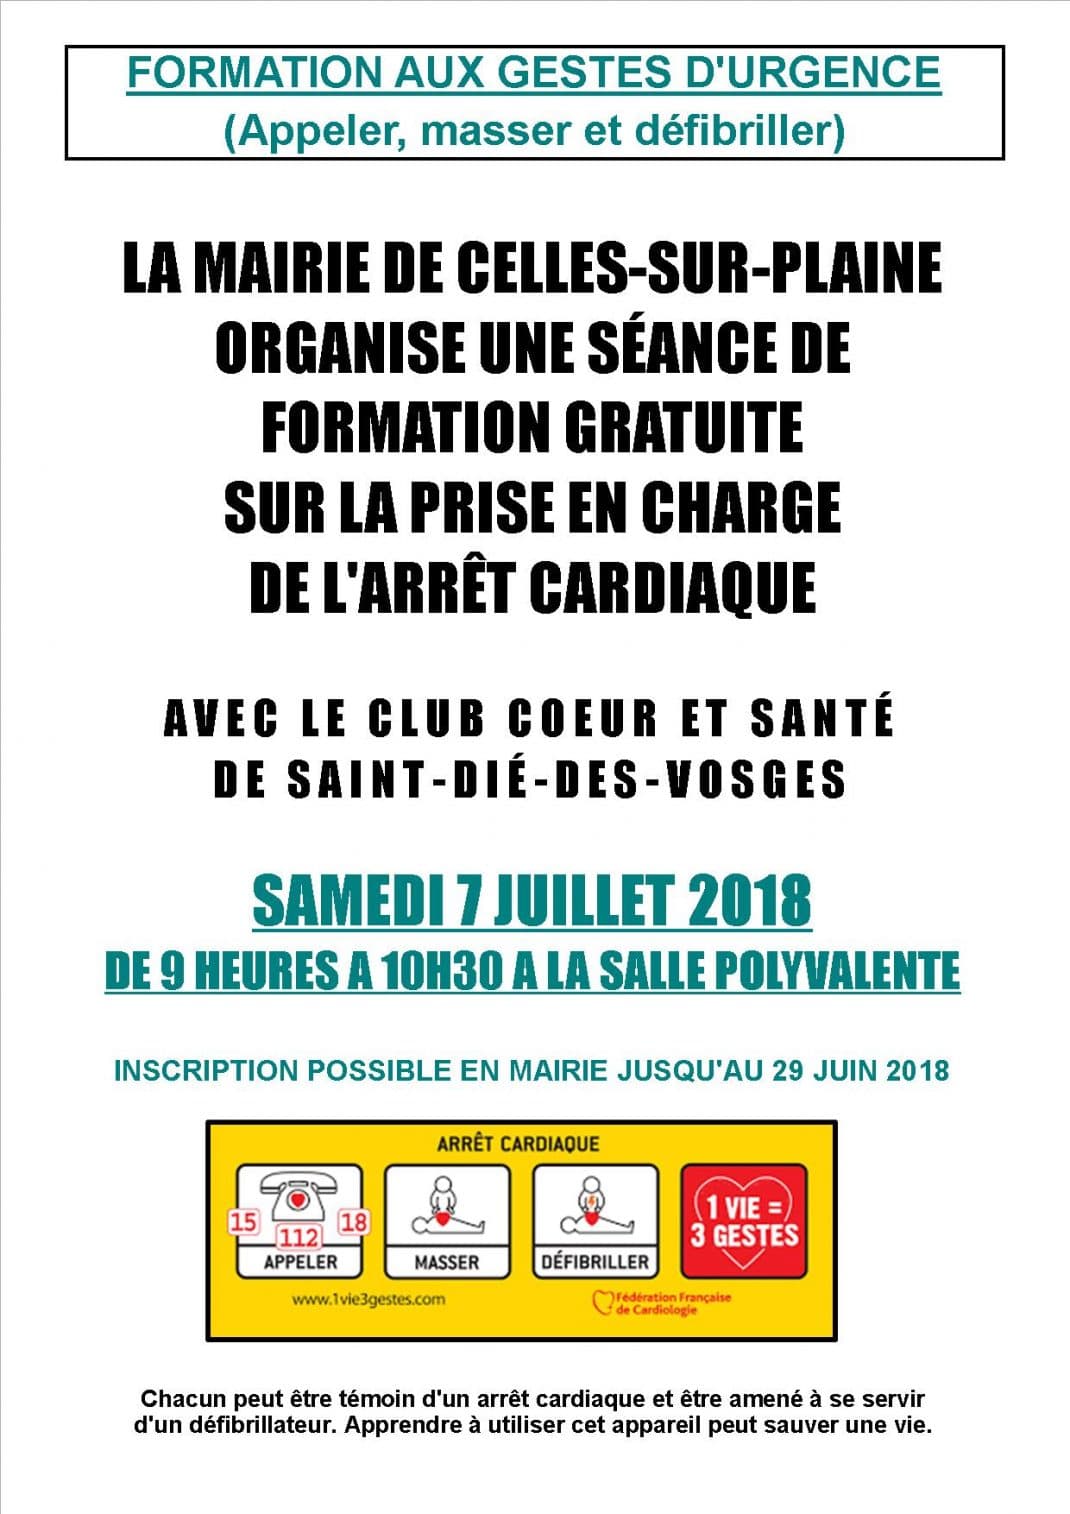 Affiche formation aux gestes d'urgence-Celles sur Plaine-07-07-2018